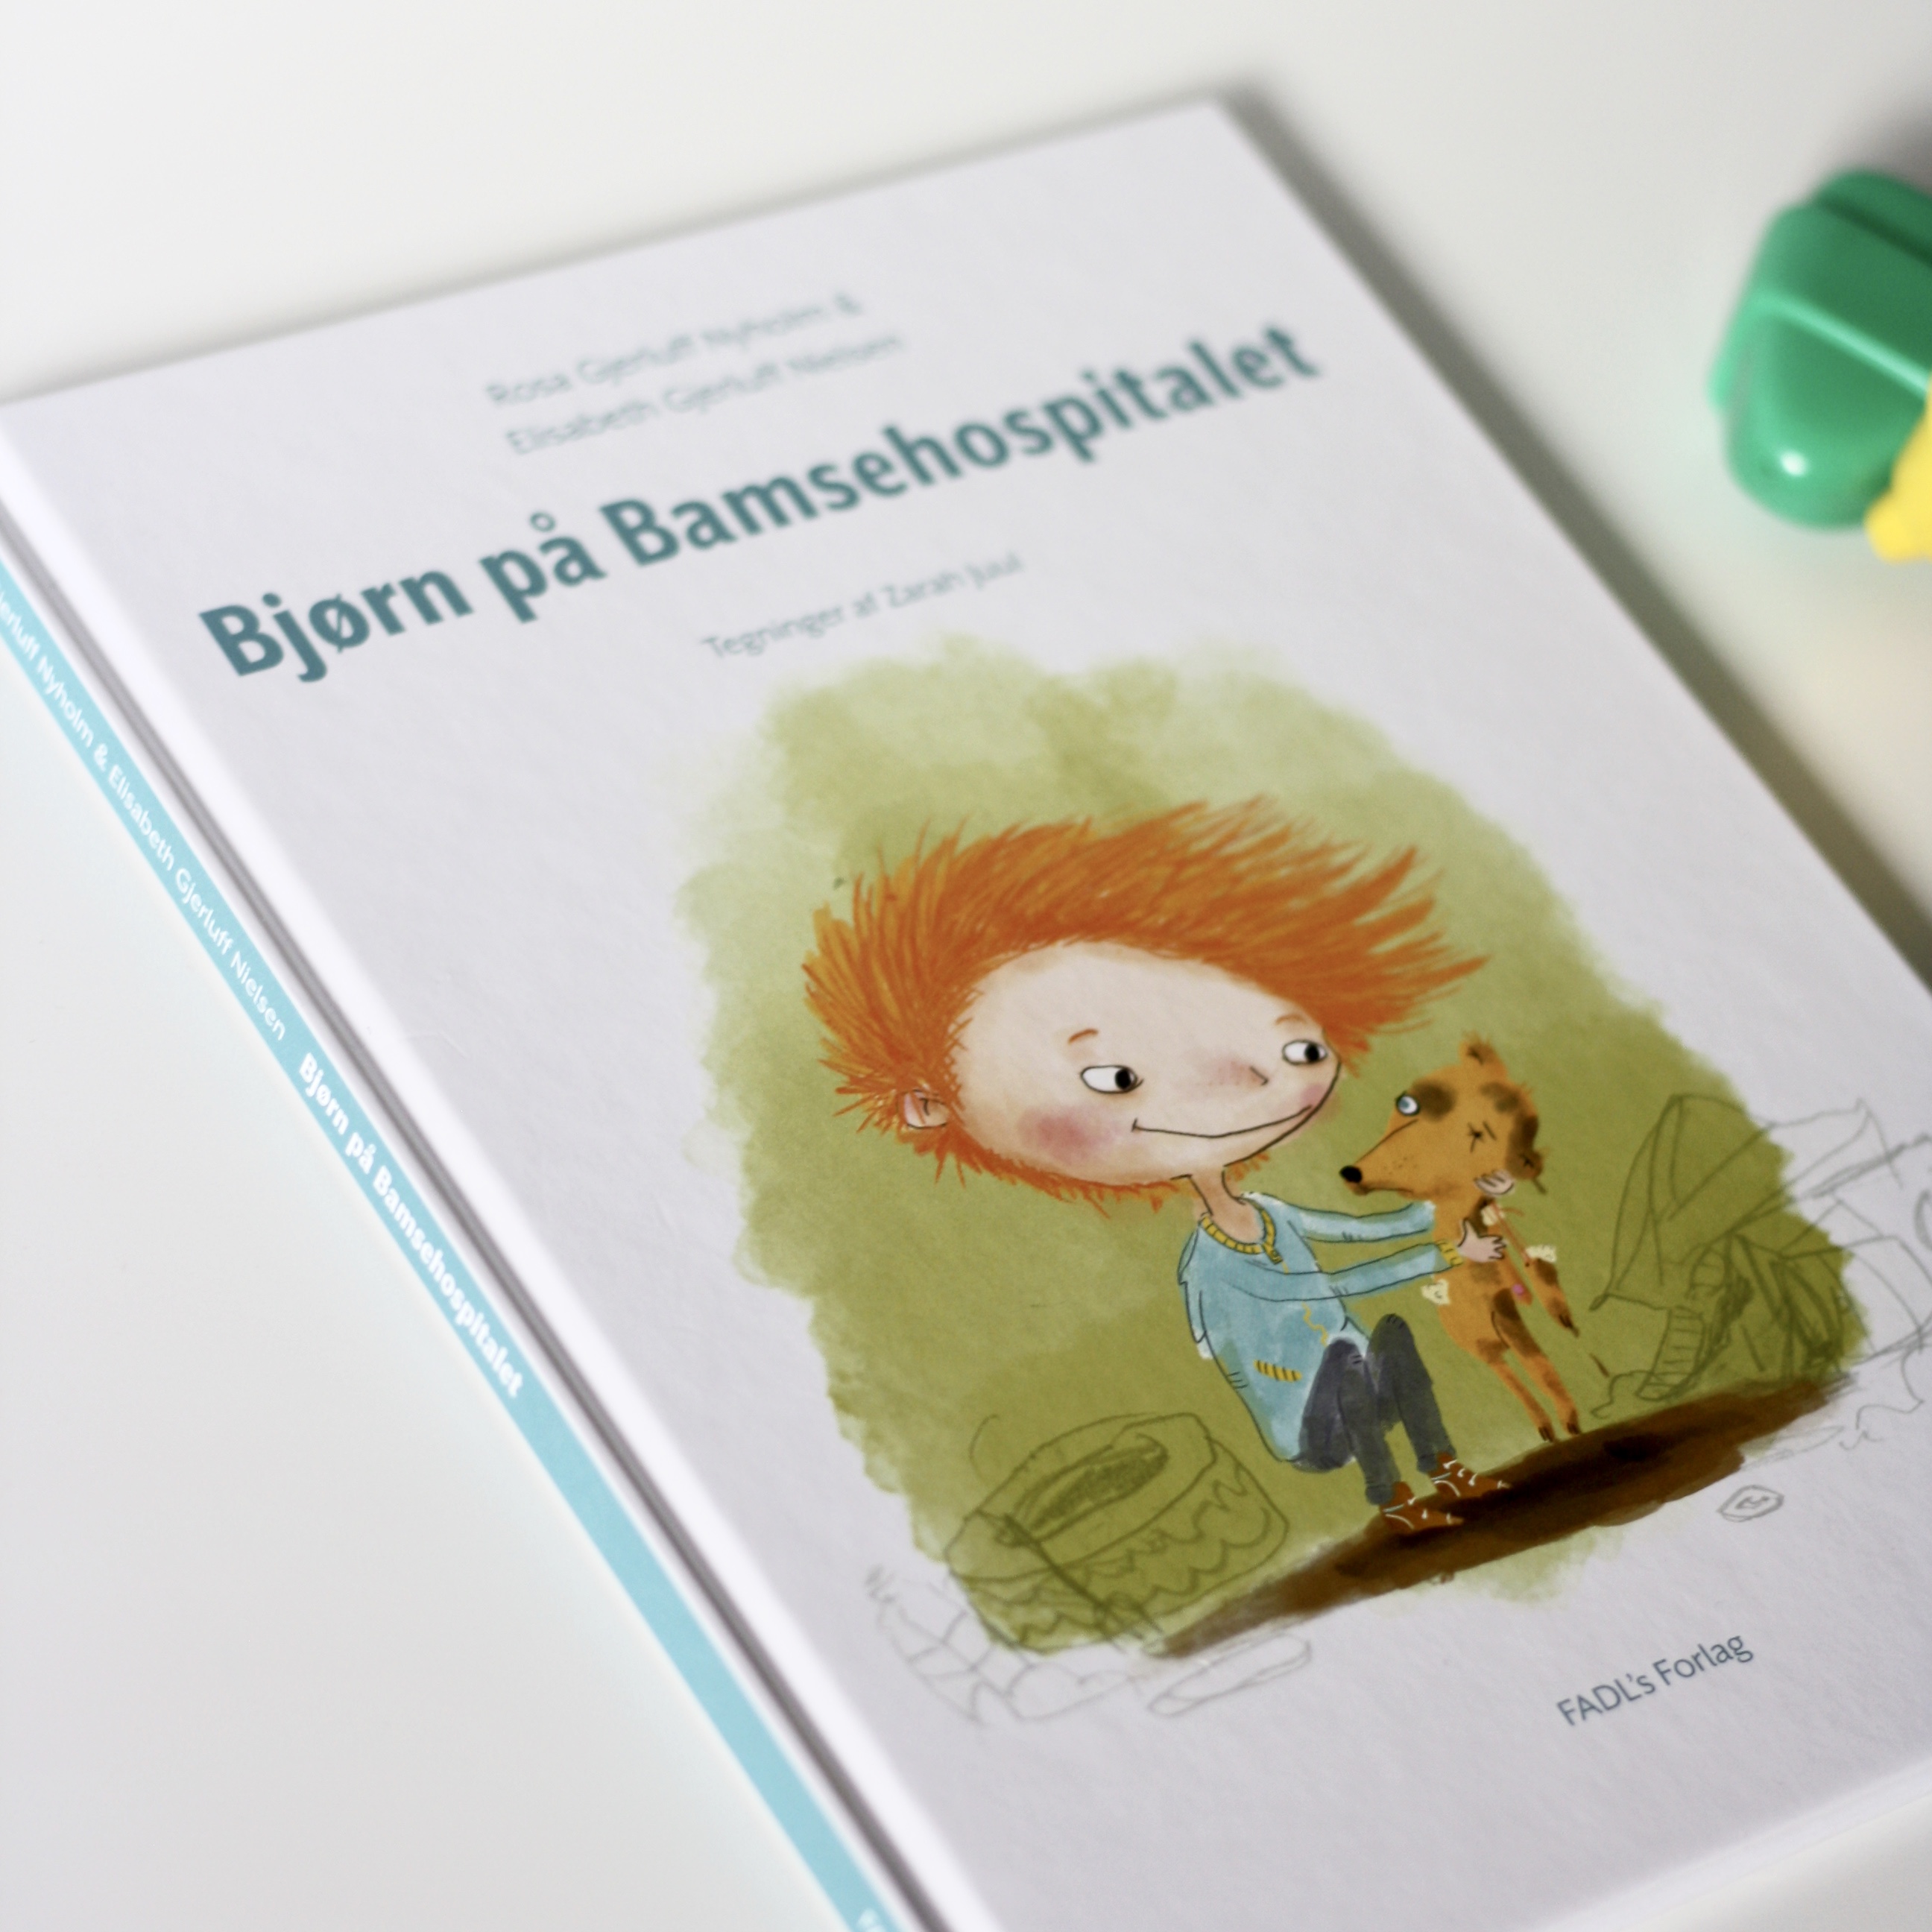 Bjørn på Bamsehospitalet, Rosa Gjerluff Nyholm, Elisabeth Gjerluff Nielsen, Bogoplevelsen